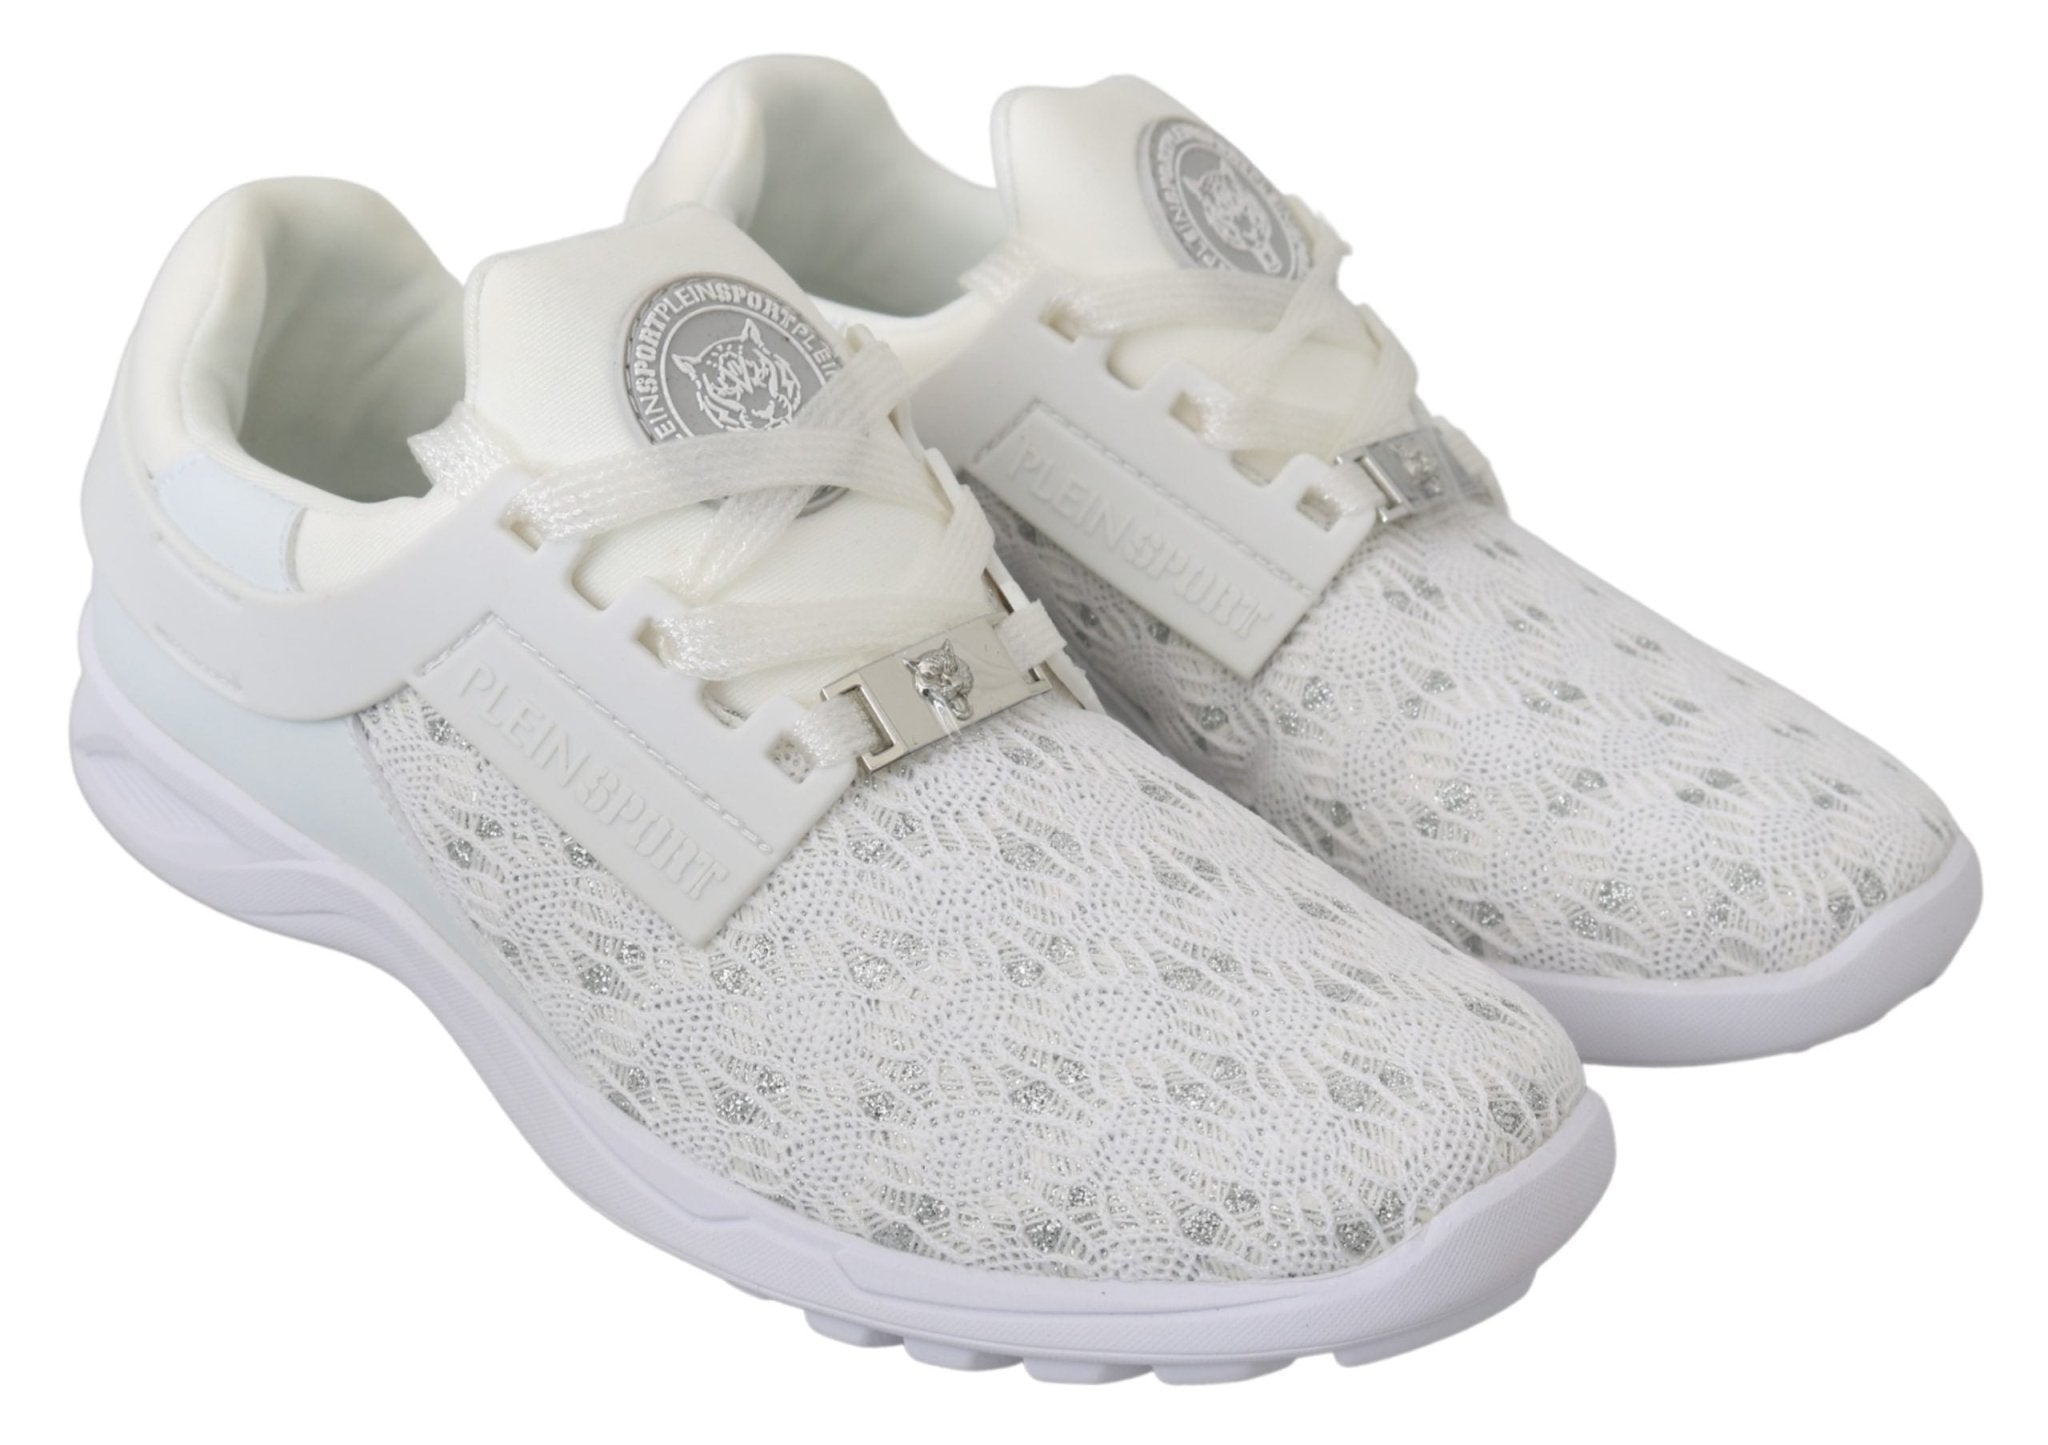 Philipp Plein White Polyester Casual Sneakers Shoes - Fizigo